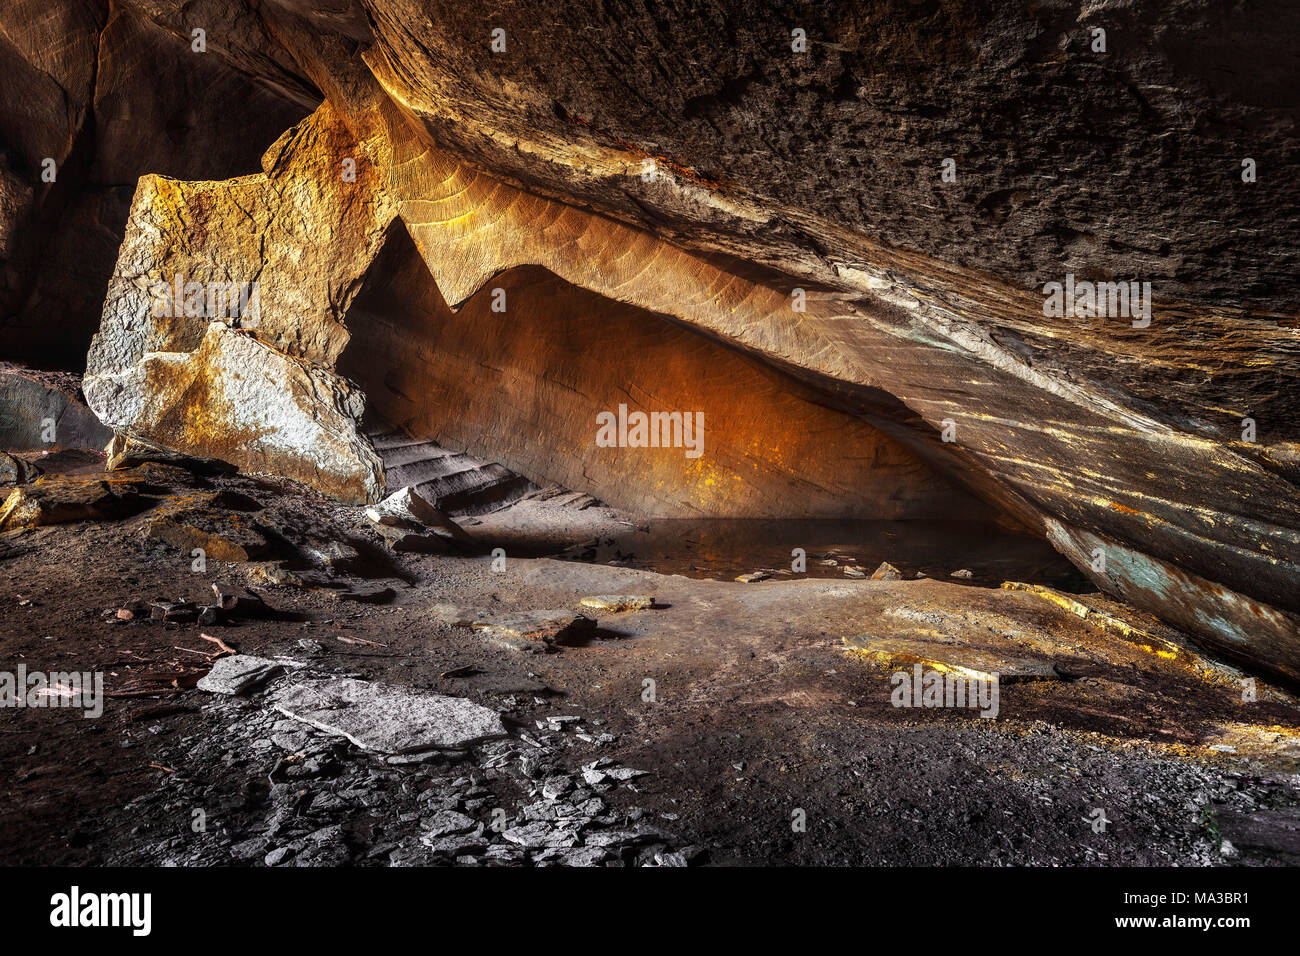 L'intérieur d'une grotte de pierre molera, Valle del lanza, Malnate, province de Varèse, Lombardie, Italie, Europe Banque D'Images